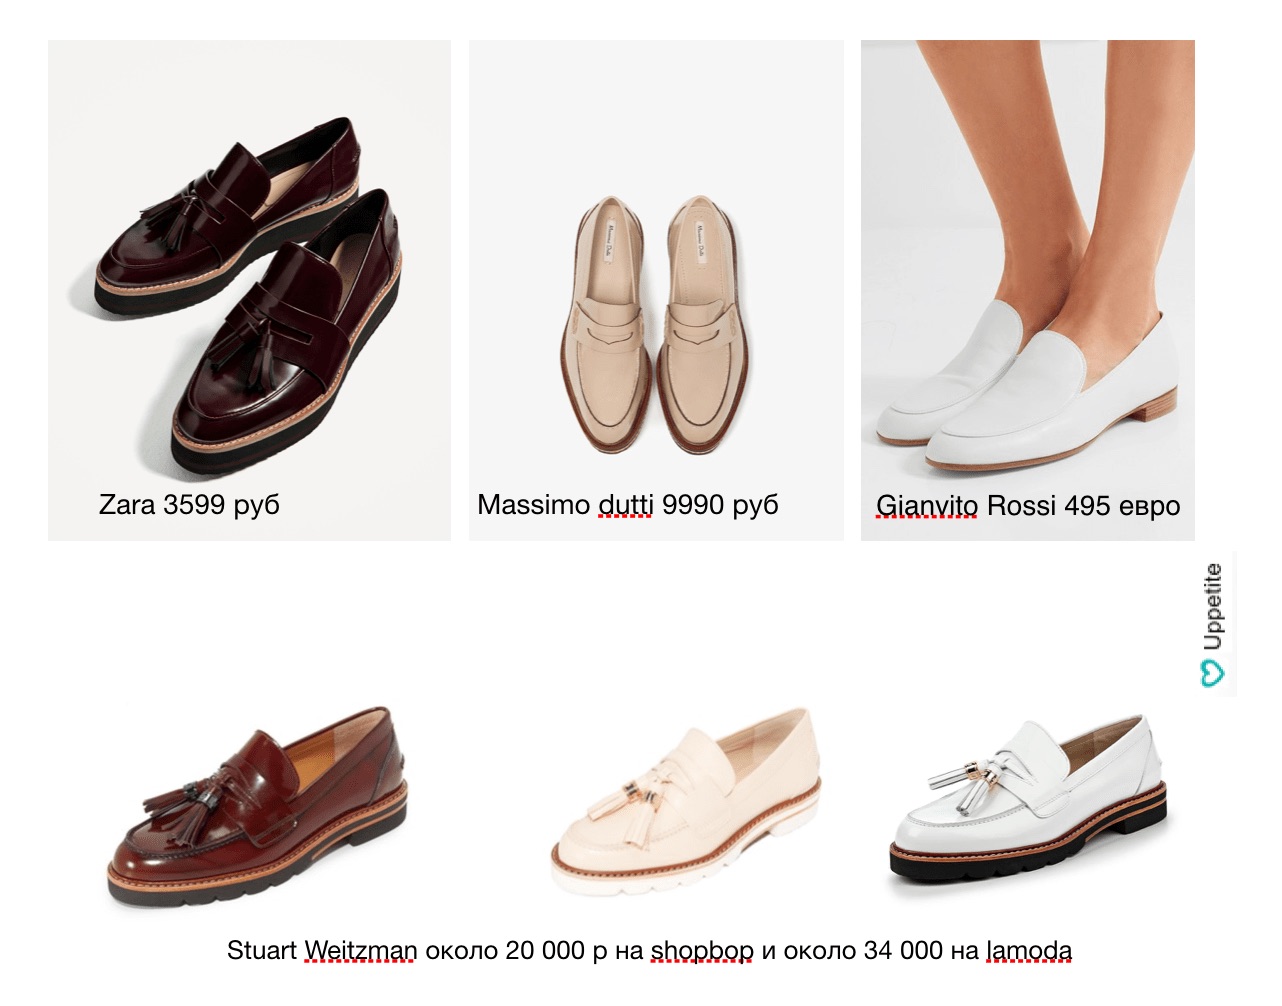 Zapatos para mujeres pequeñas: qué elegir y dónde comprar dependiendo de la temporada.